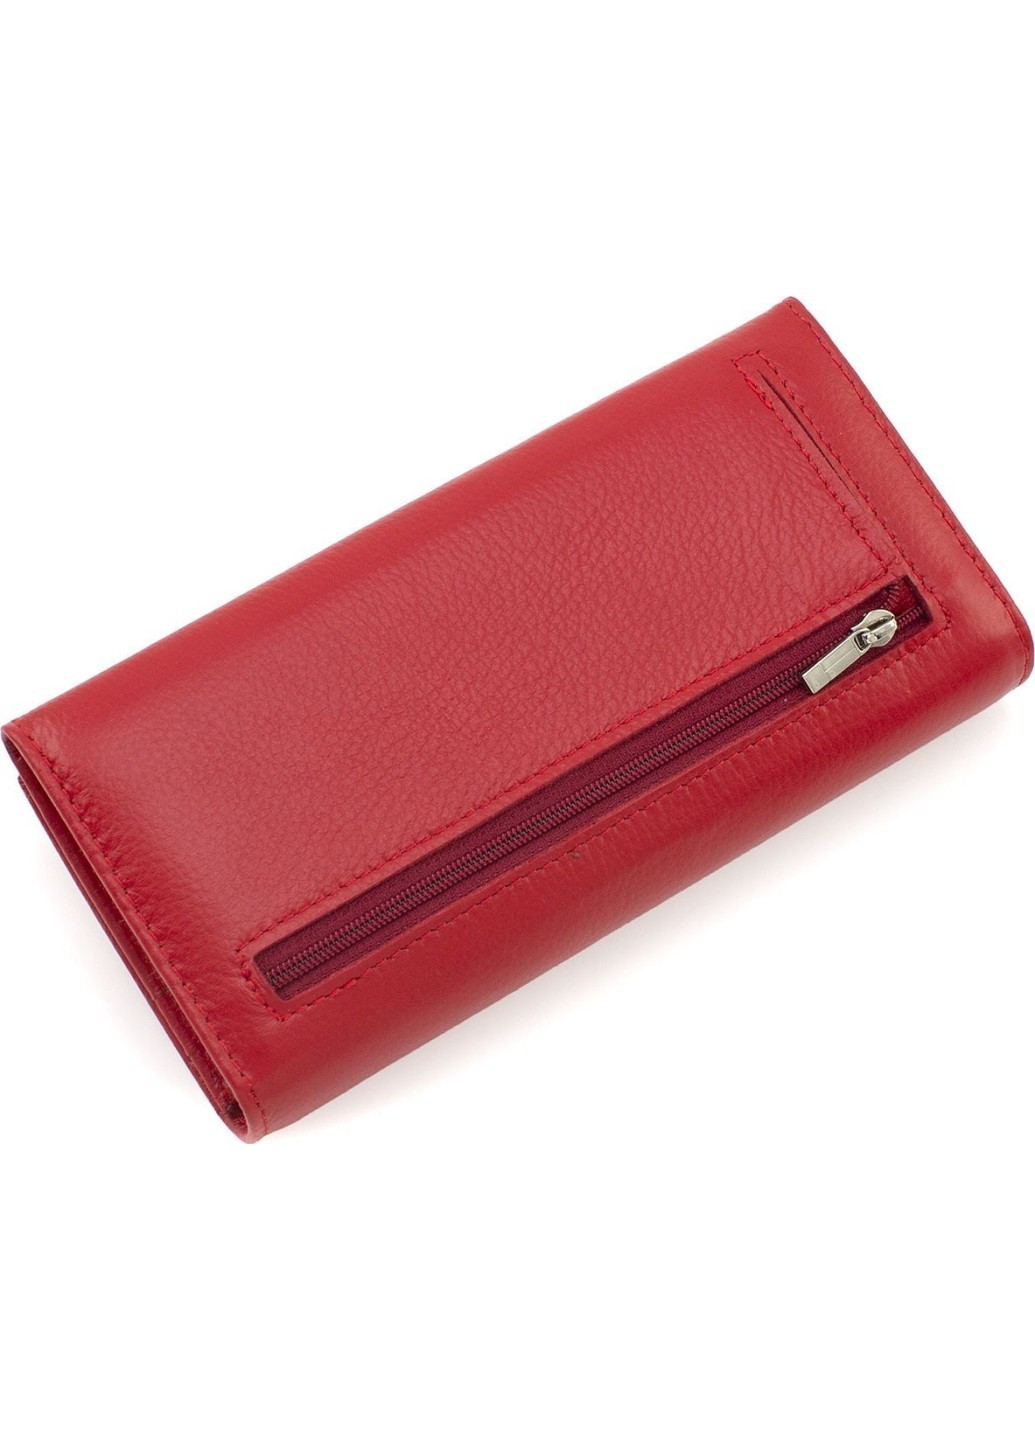 Женский кошелек на магнитах кожаный под много купюр 18,5х9 MA501-1-Red(17132) красный Marco Coverna (259752473)